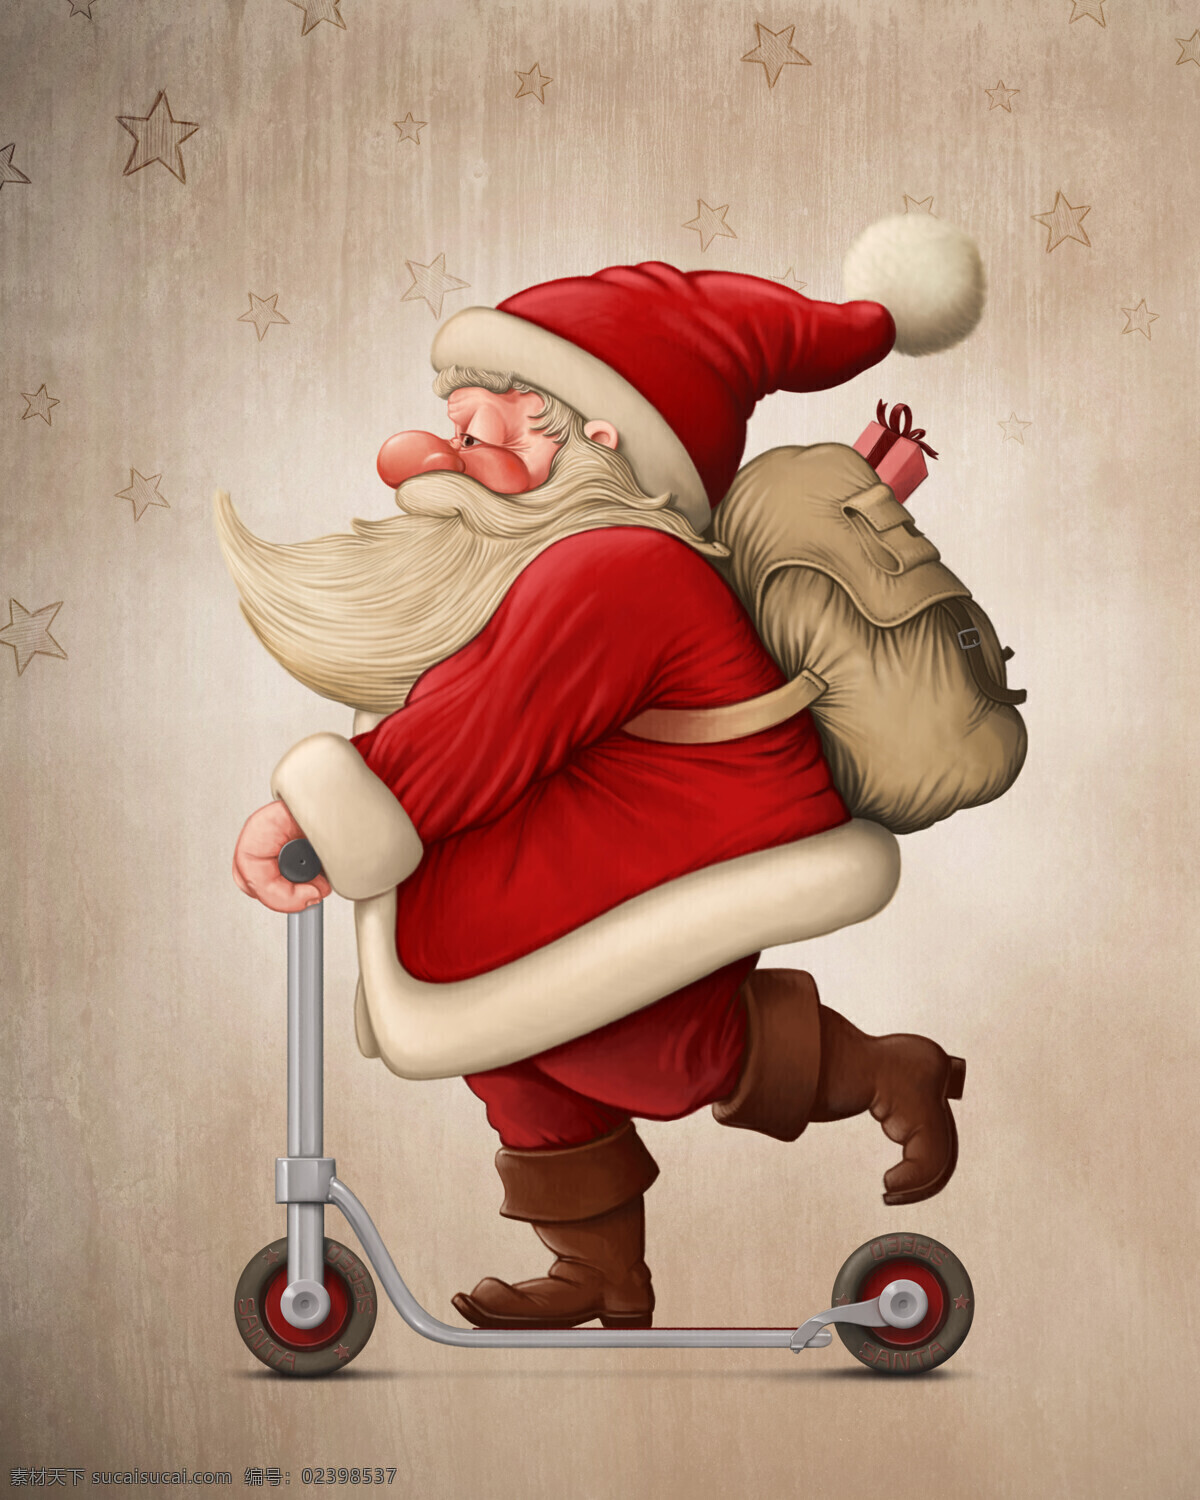 踩 单车 圣诞老人 圣诞节 卡通 其他人物 人物图片